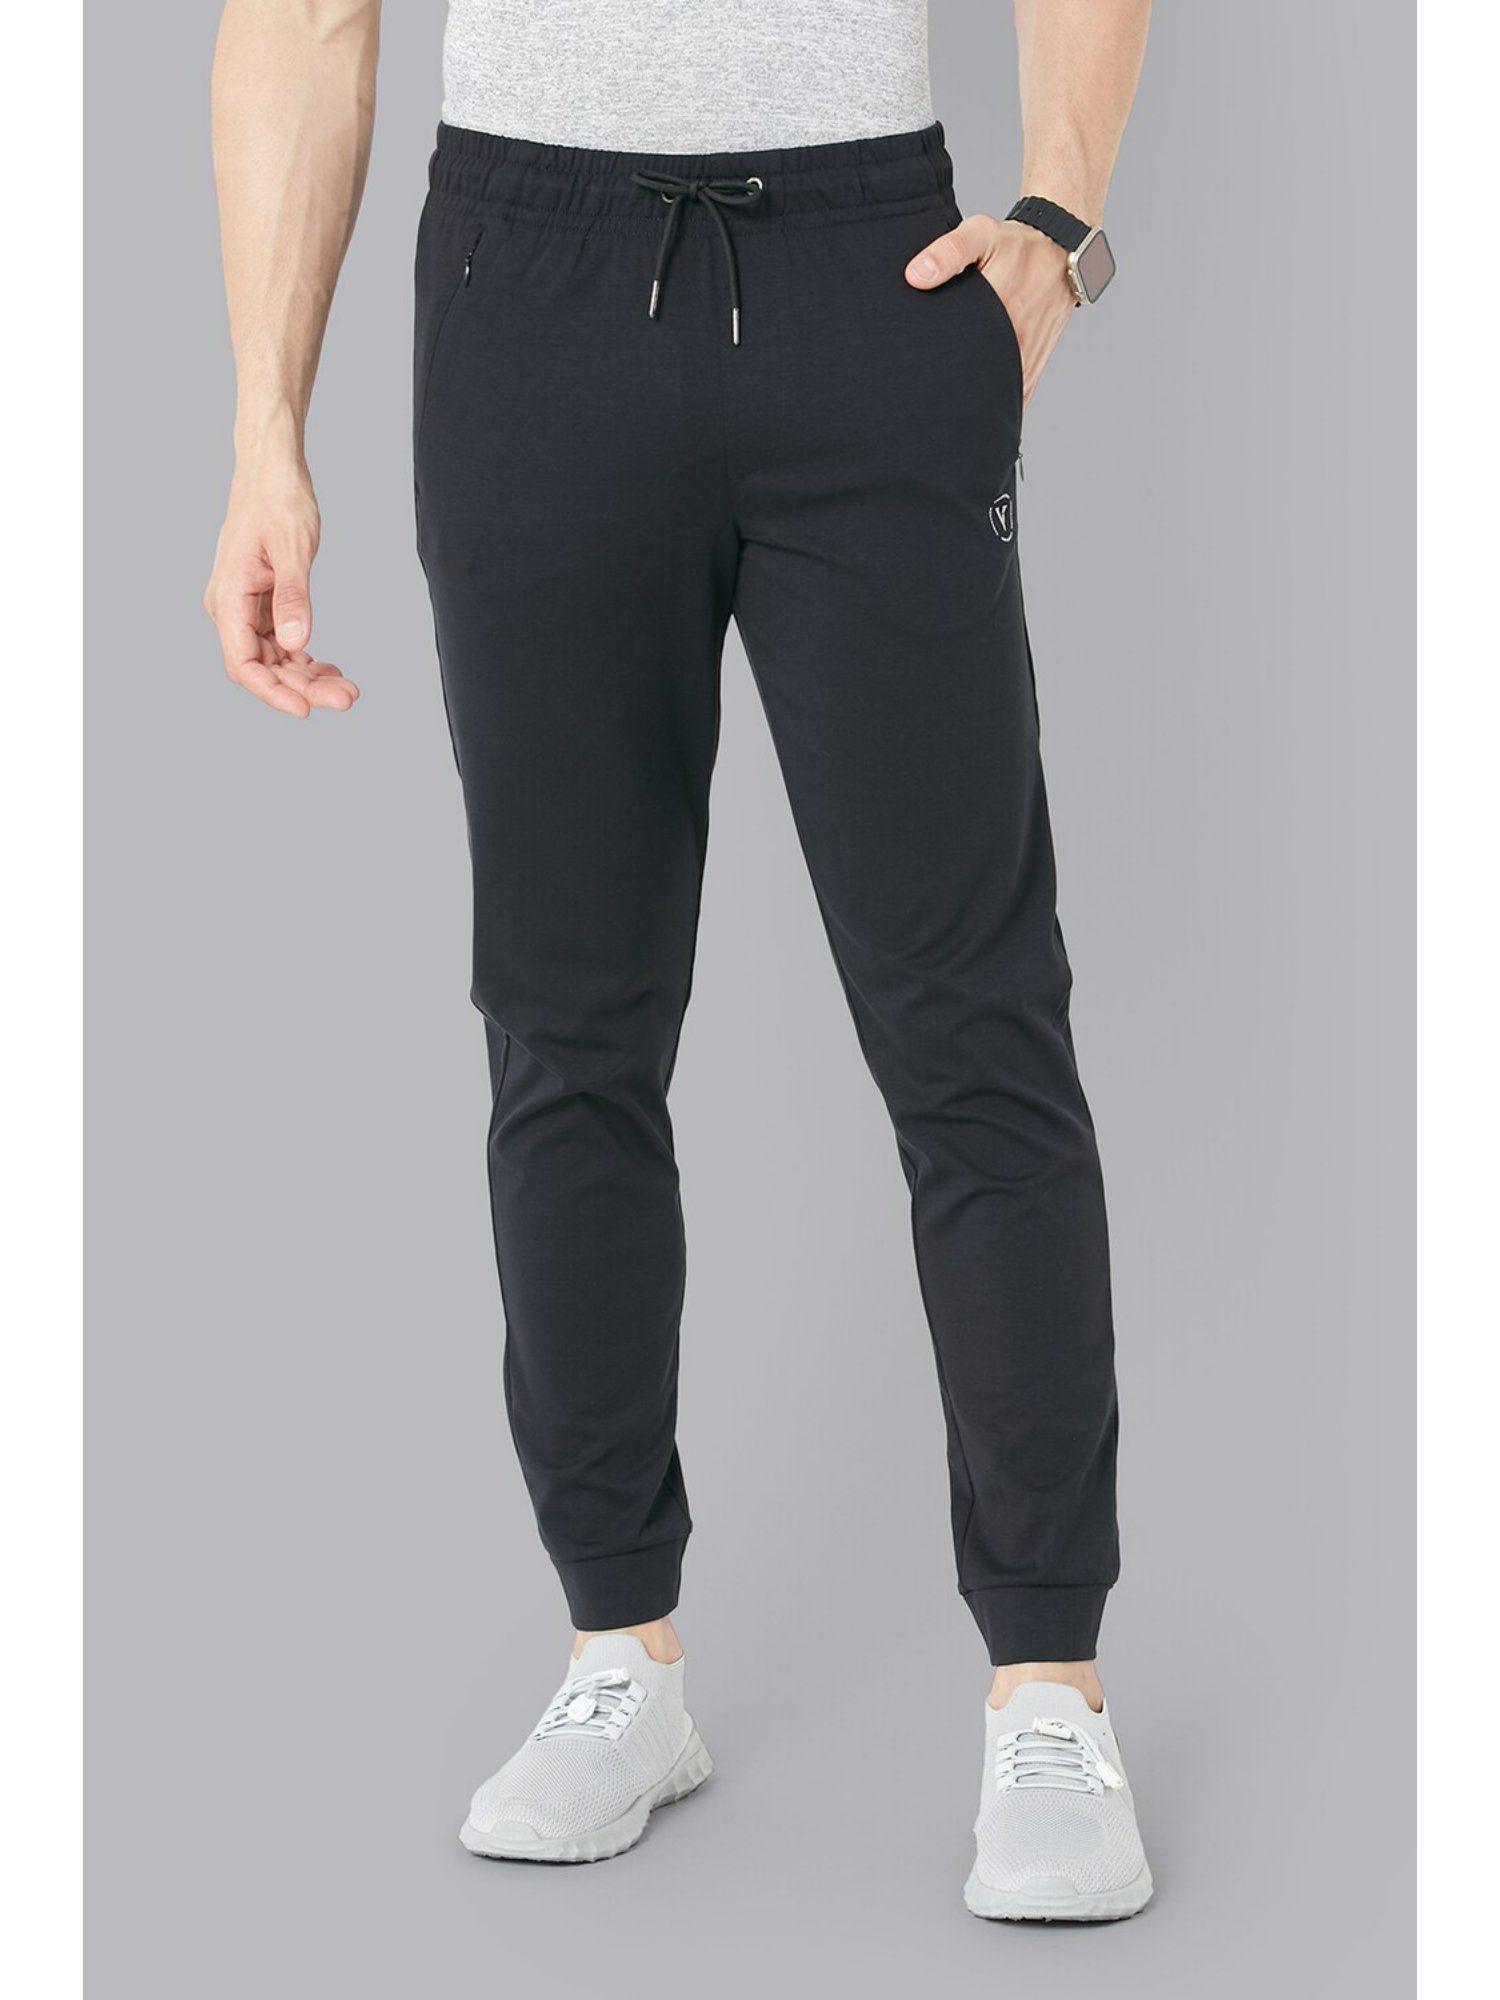 men grey solid casual jogger pants